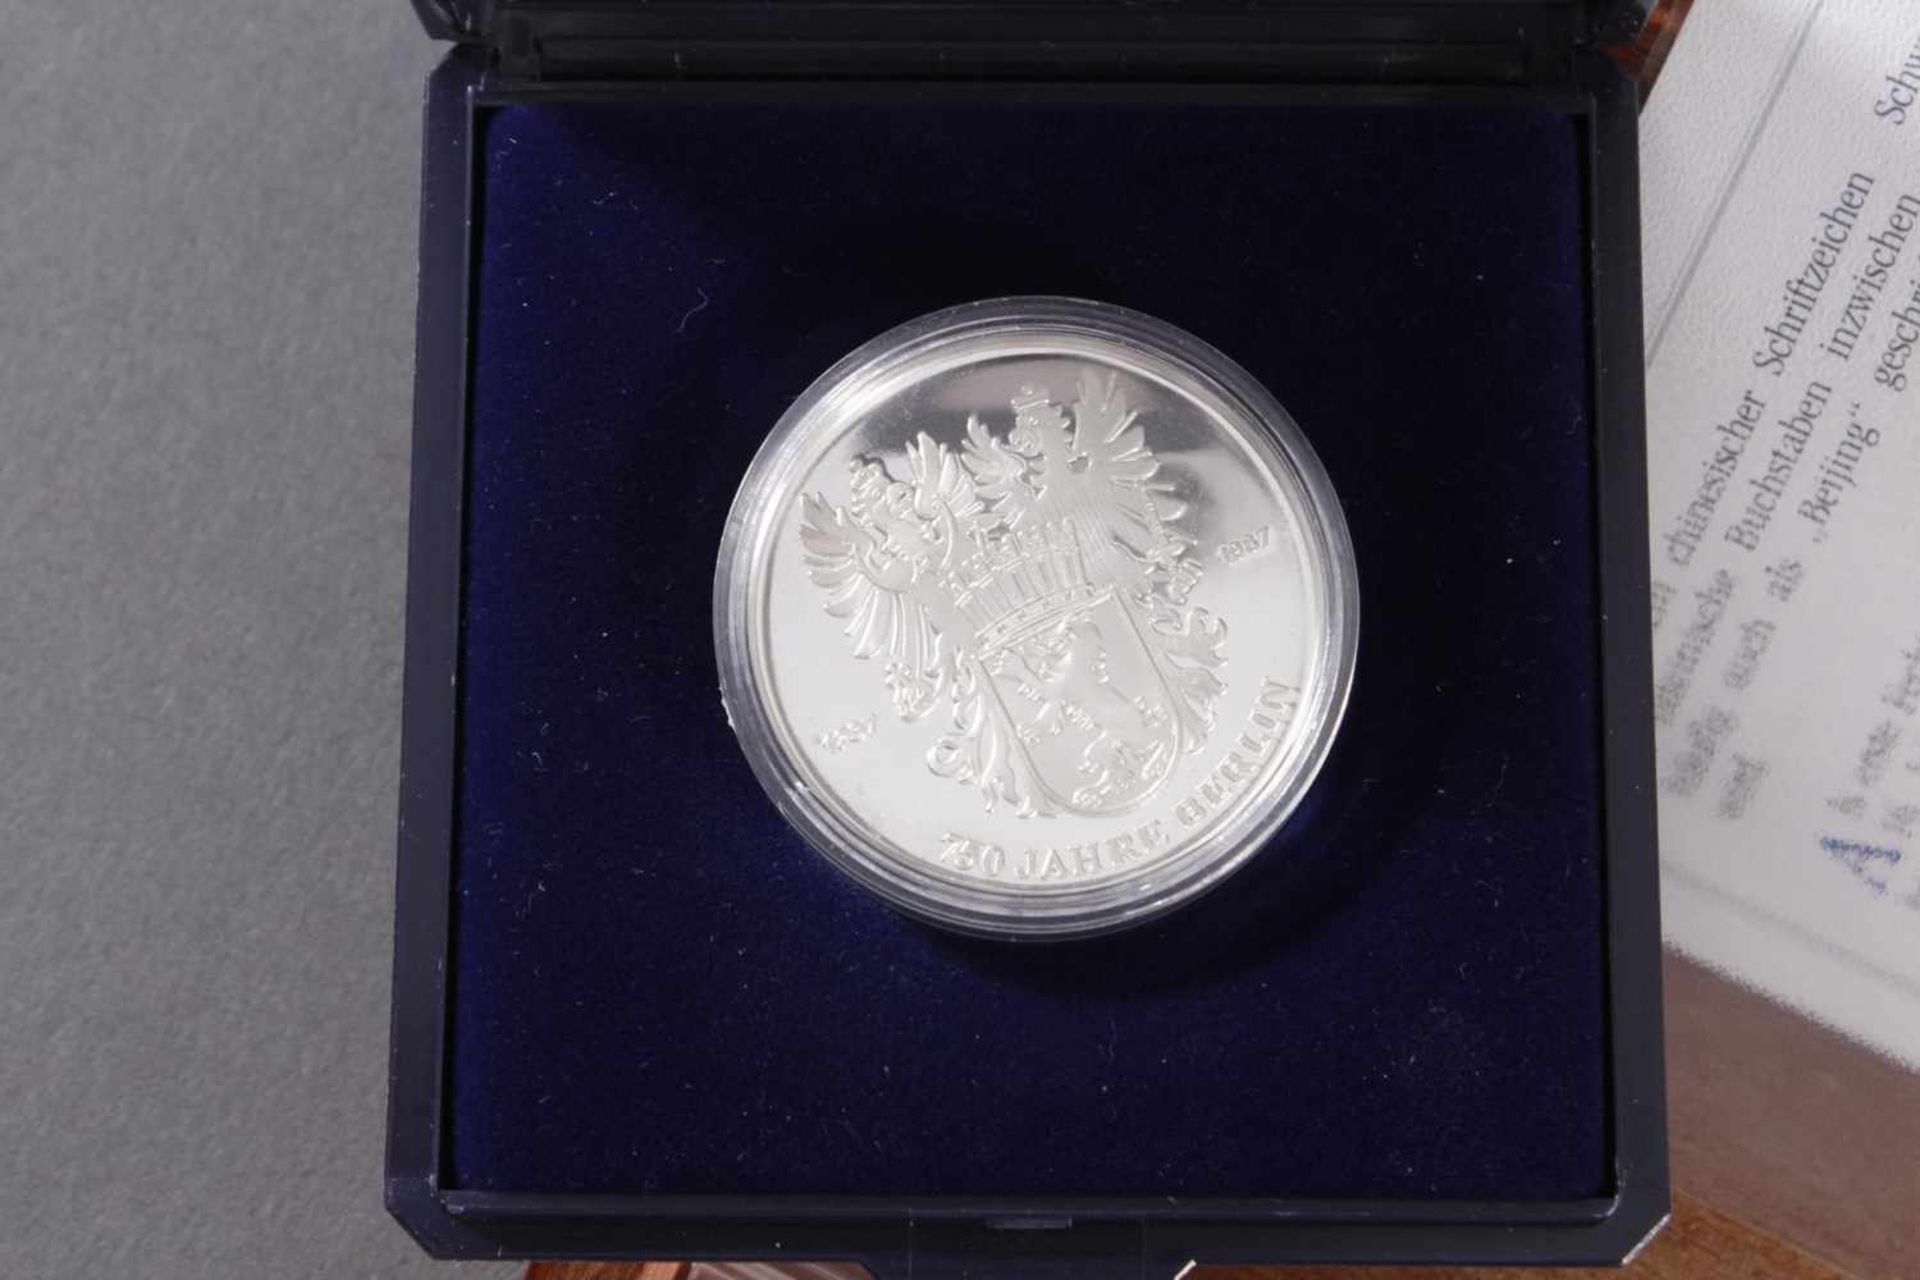 Sammlung Münzen und Medaillen1 1/2 Euro, 900er Silber, 22 g. 1 1/2 Euro Frankreich 2006, Silber - Bild 4 aus 5